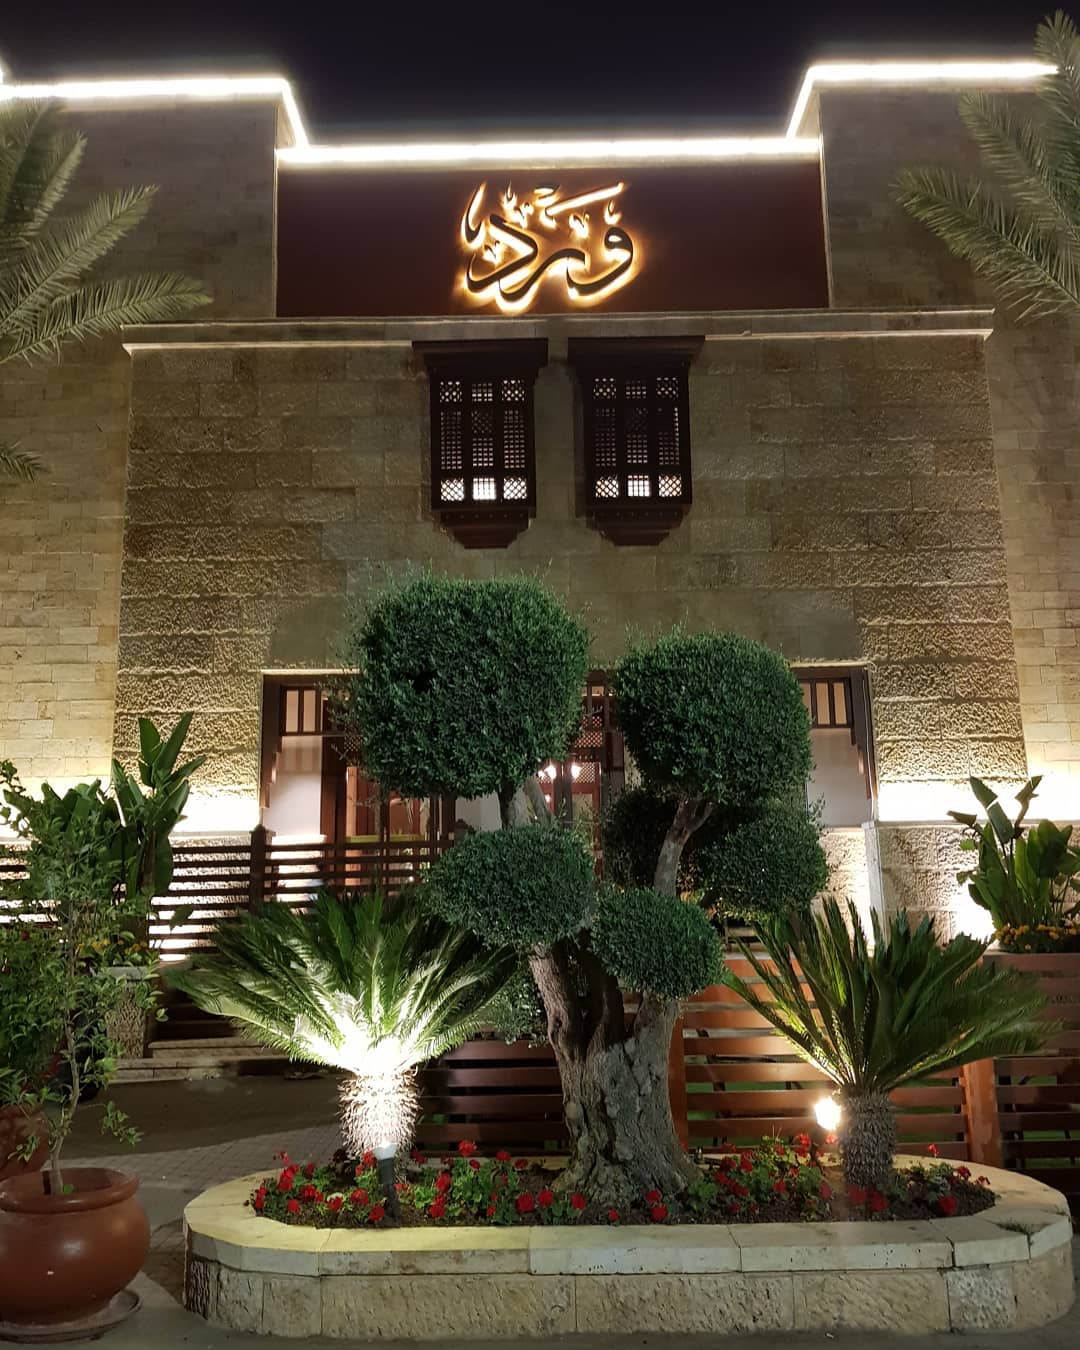  مطعم ورد - اطيب مطاعم المشاوي في عمان, الاردن